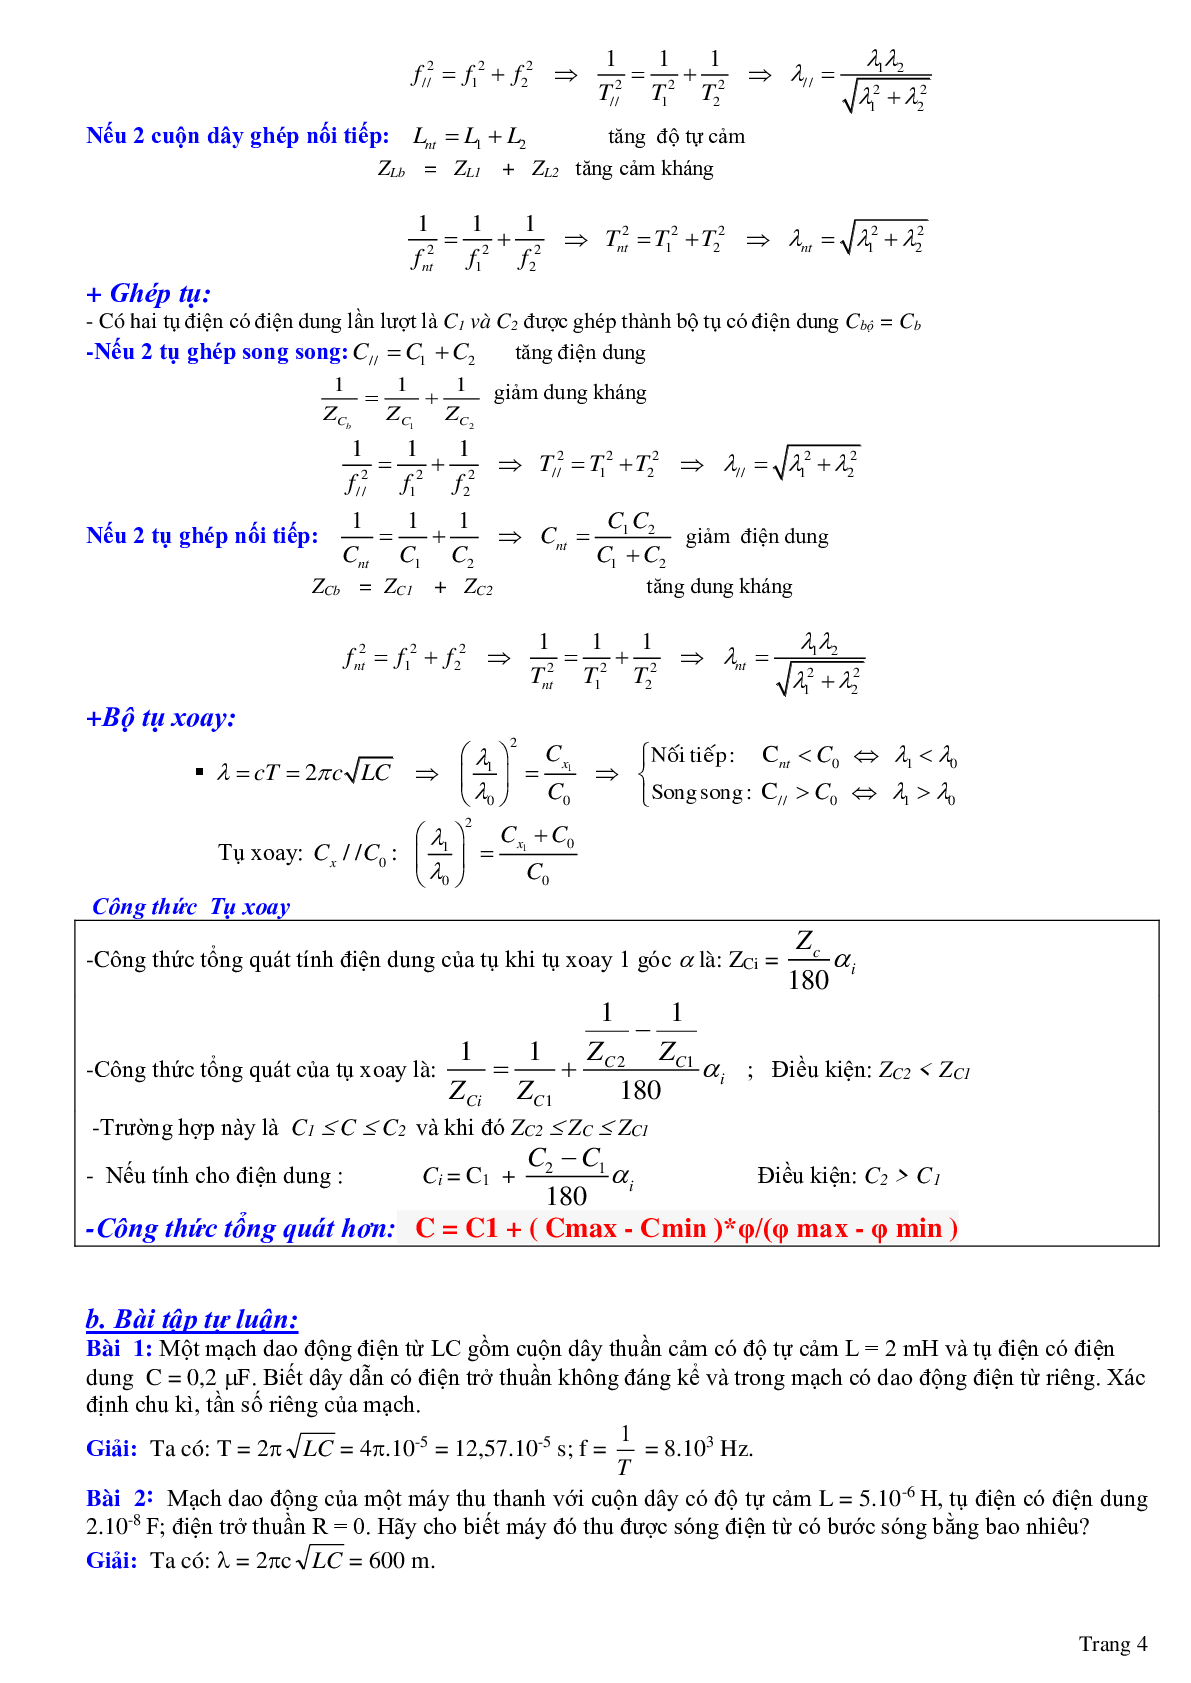 Chuyên đề: Dao động và sóng điện từ môn Vật lý lớp 12 (trang 4)